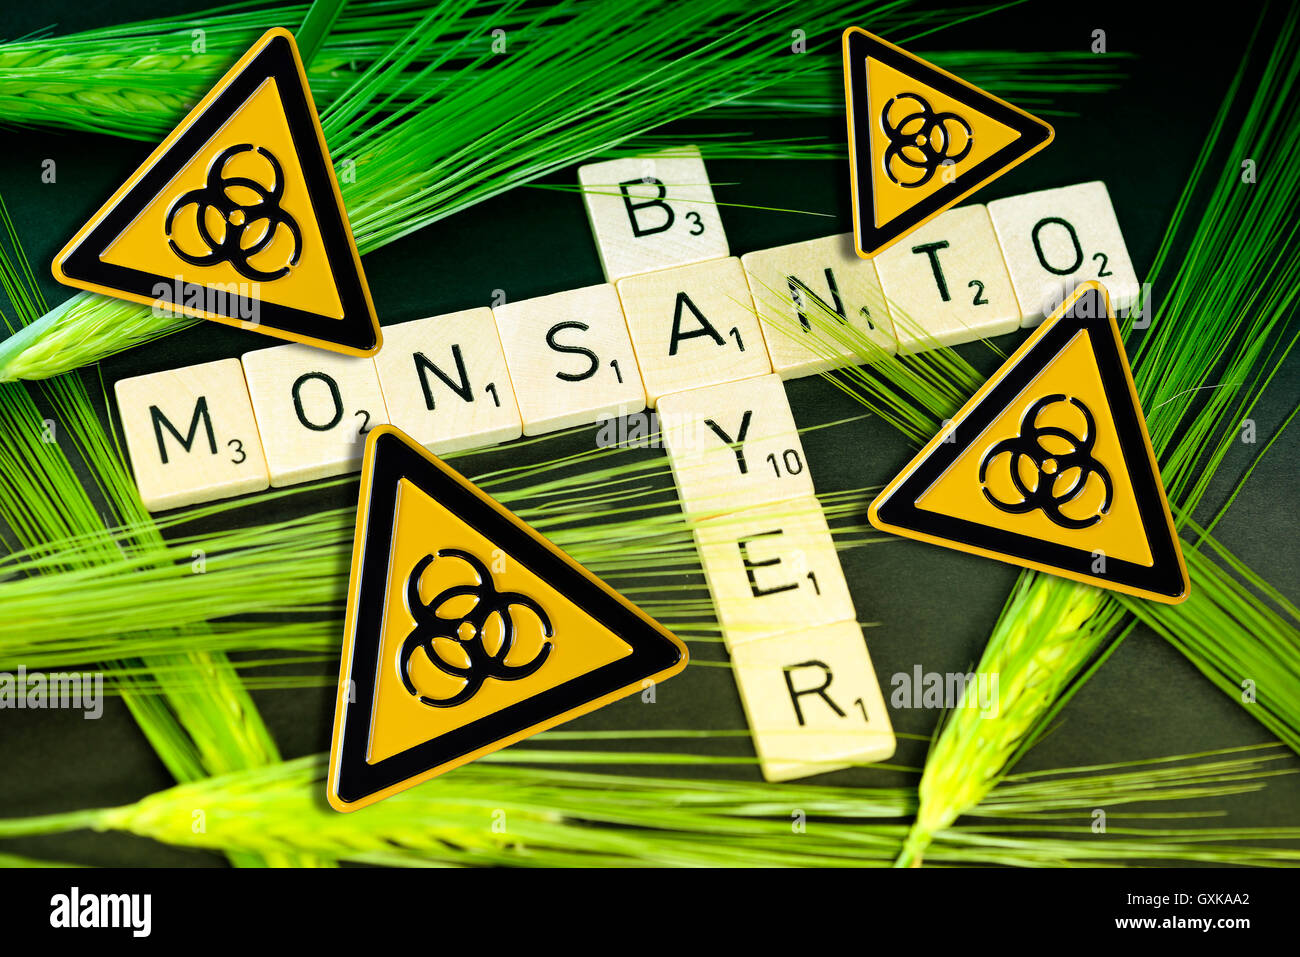 SchriftzÃ¼ge von Bayer und Monsanto mit KornÃ¤hren und BiogefÃ¤hrdungszeichen, Ãœbernahmeangebot von Bayer Stock Photo